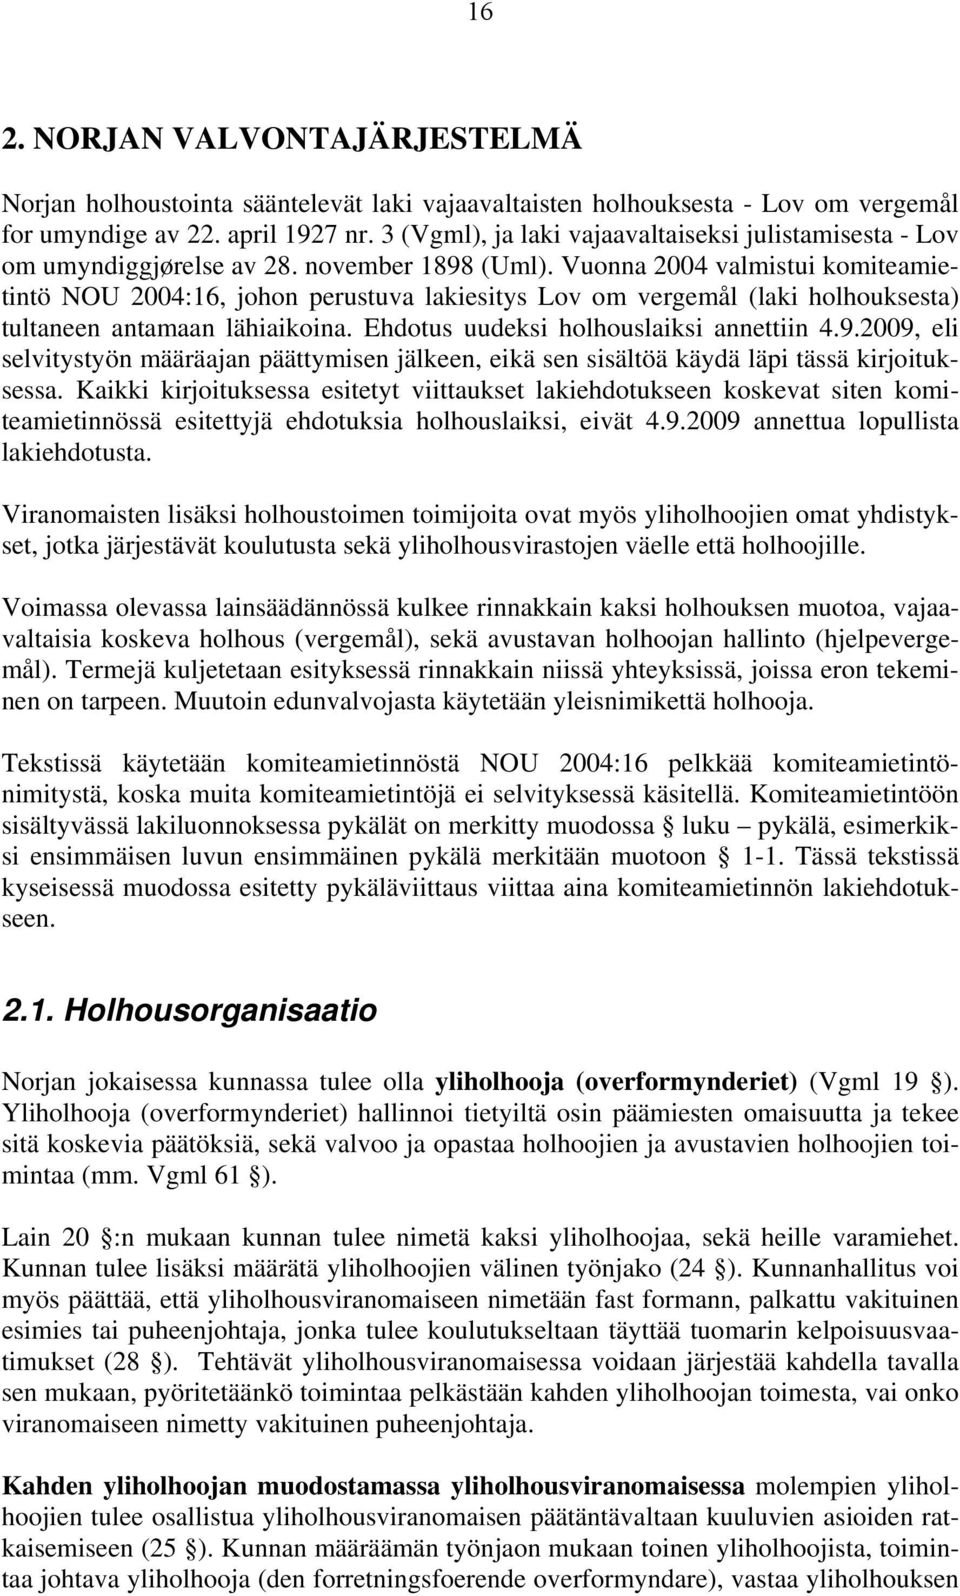 Vuonna 2004 valmistui komiteamietintö NOU 2004:16, johon perustuva lakiesitys Lov om vergemål (laki holhouksesta) tultaneen antamaan lähiaikoina. Ehdotus uudeksi holhouslaiksi annettiin 4.9.